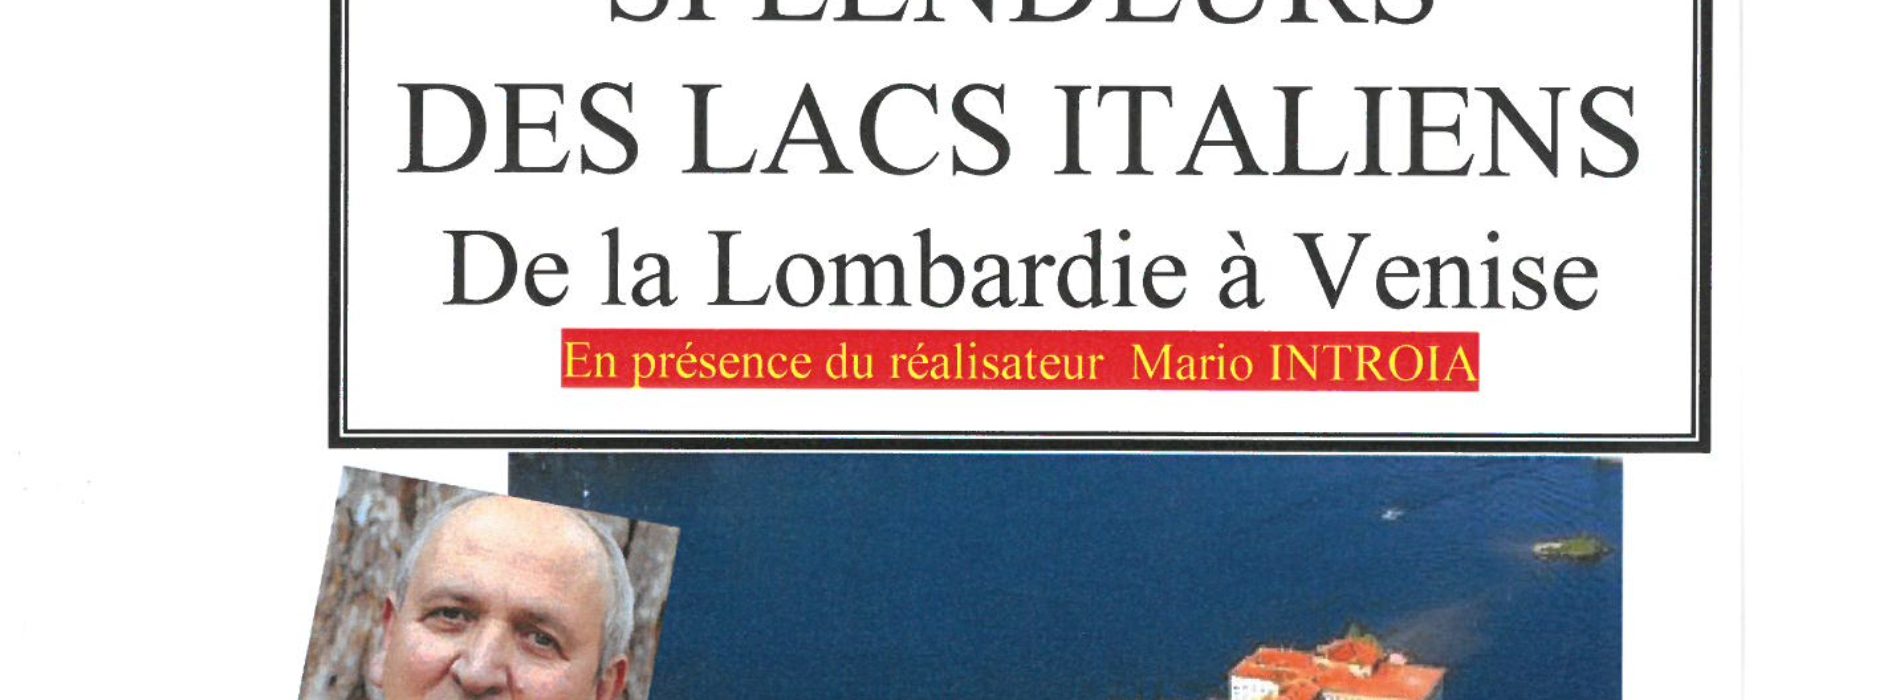 CONFERENCE CONNAISSANCE DU MONDE “SPLENDEURS DES LACS ITALIENS” Samedi 6 Avril-15h00-ECLAM